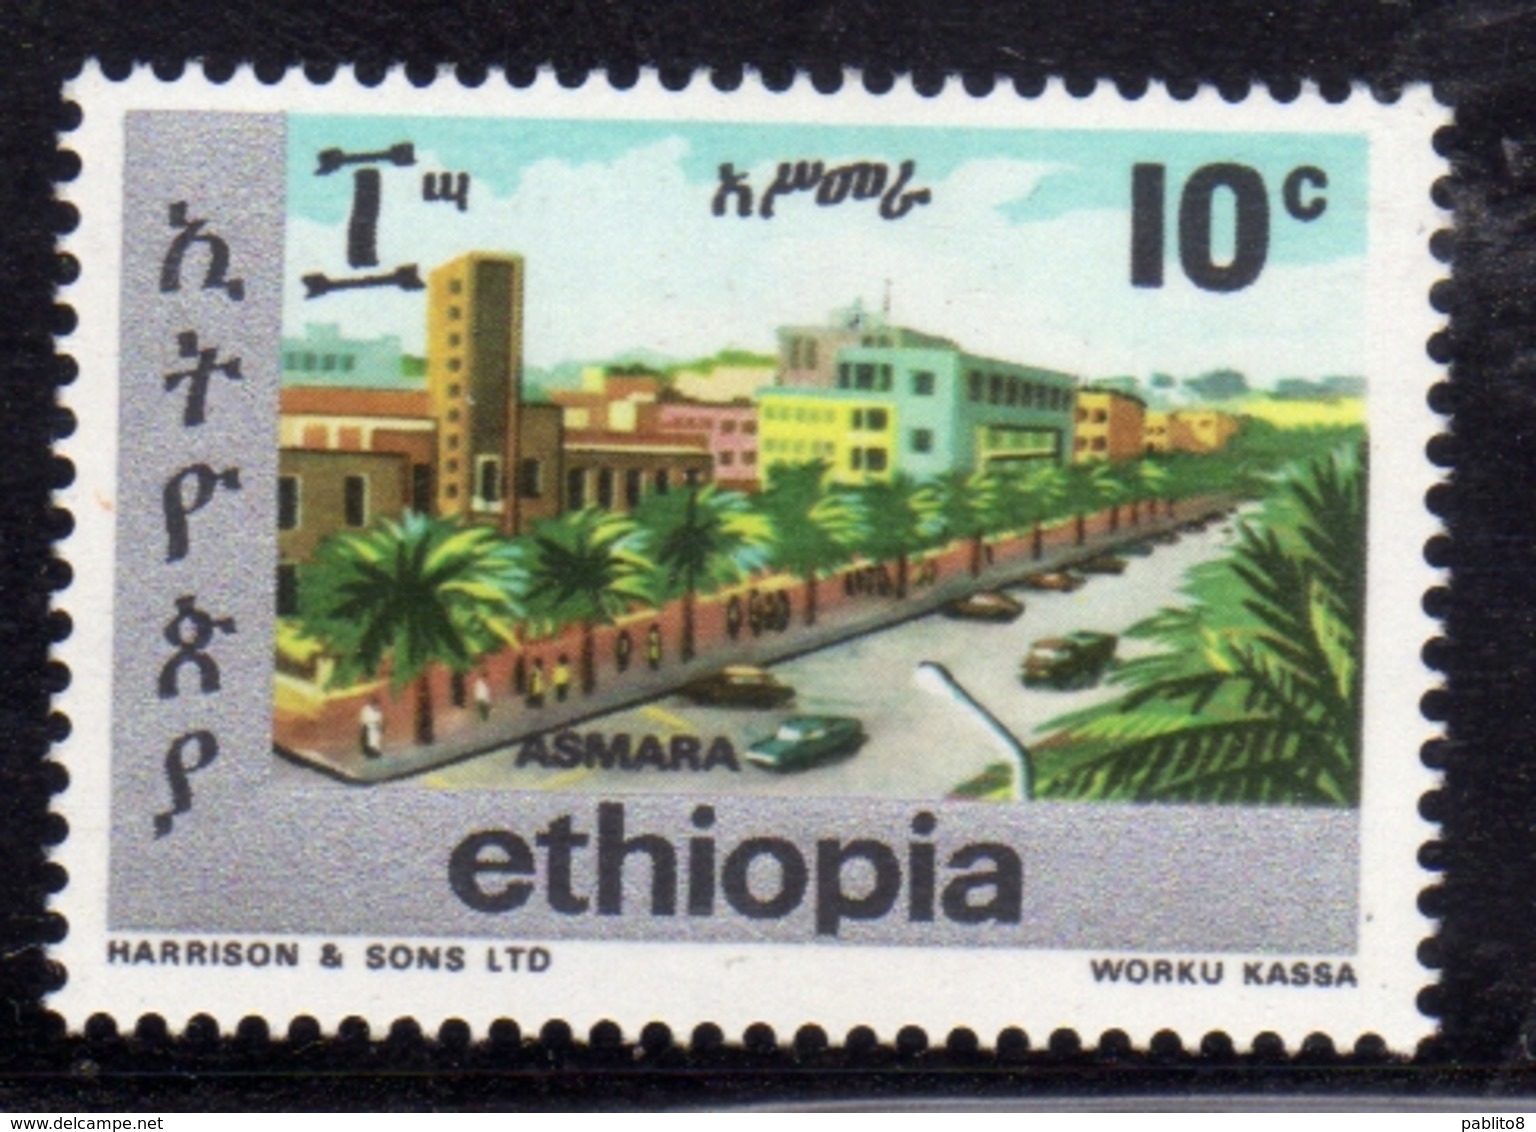 ETHIOPIA ETIOPIA ETHIOPIE 1977 TOWNS OF ADDIS ASMARA CENT. 10c MNH - Etiopia